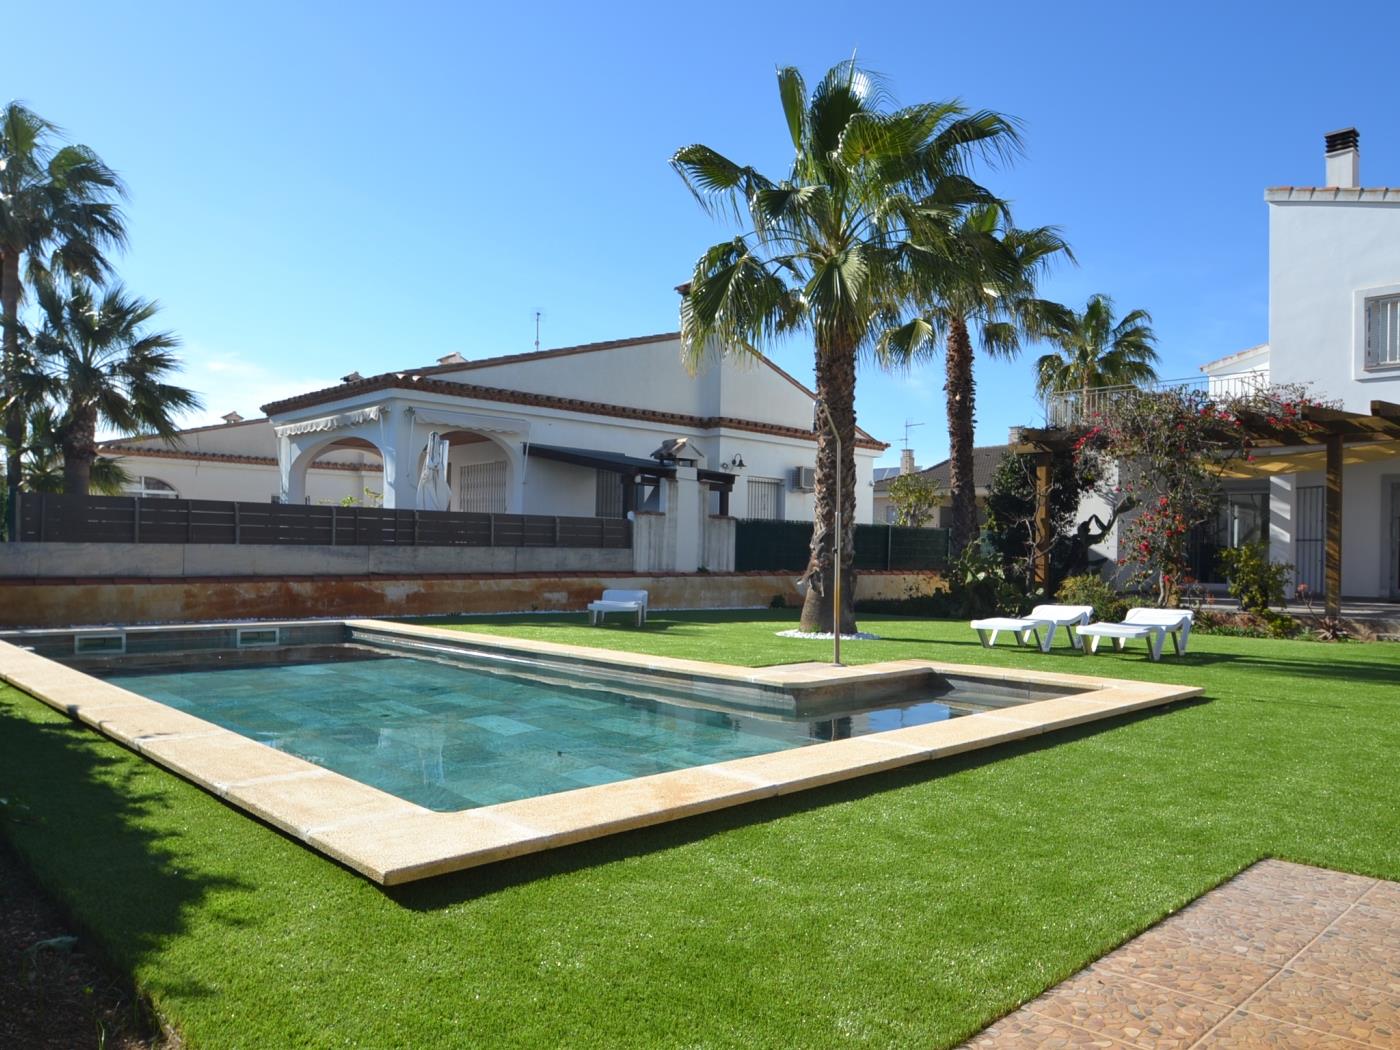 Casa Gallo with privat pool in Riumar Deltebre